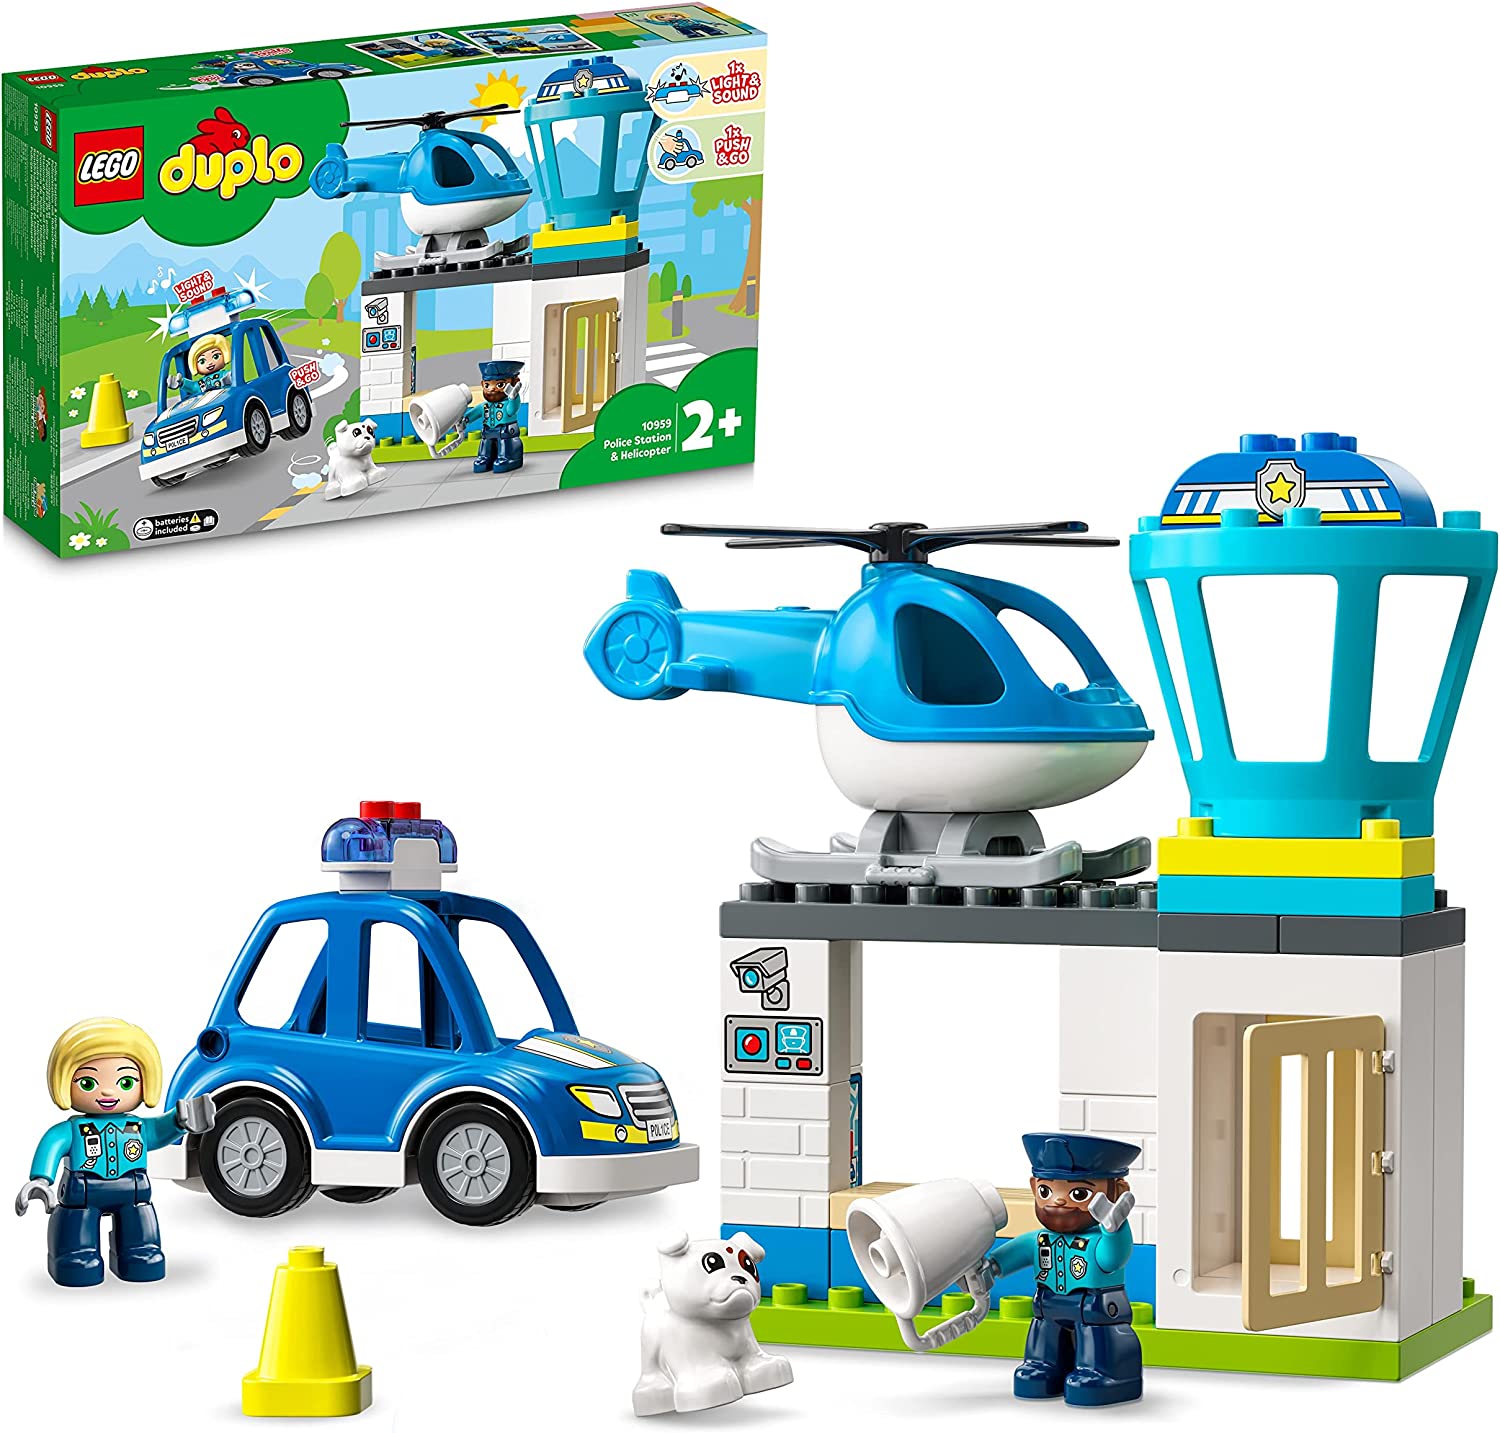 LEGO DUPLO Stazione Di Polizia ed Elicottero, Set per Bambini dai 2 Anni in  su, Giochi Educativi con Macchina Giocattolo con Luc